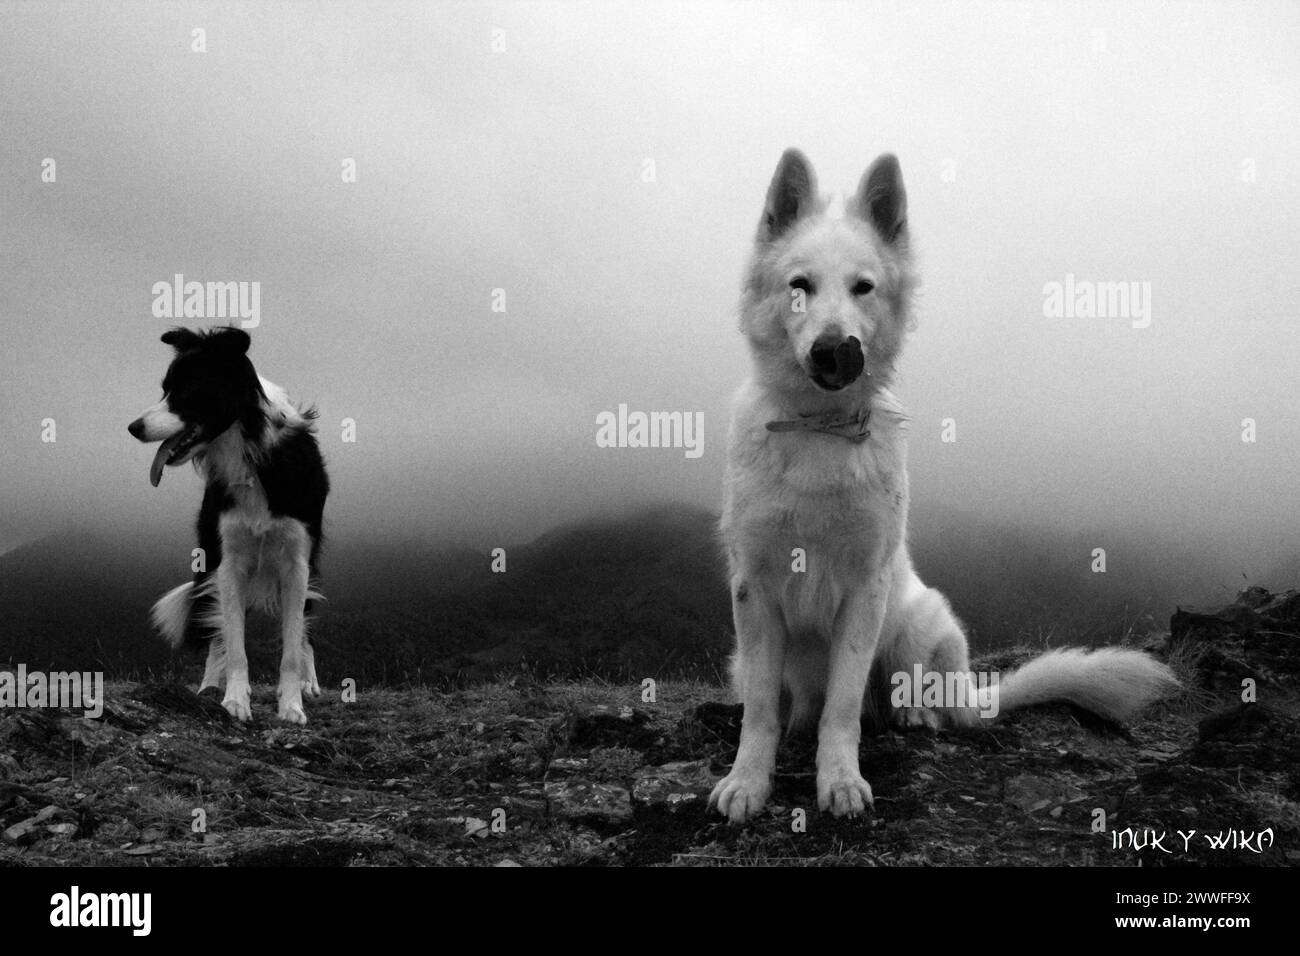 Deux chiens dans un paysage de montagne brumeux capturés en noir et blanc, chiens étonnants dans la nature Banque D'Images